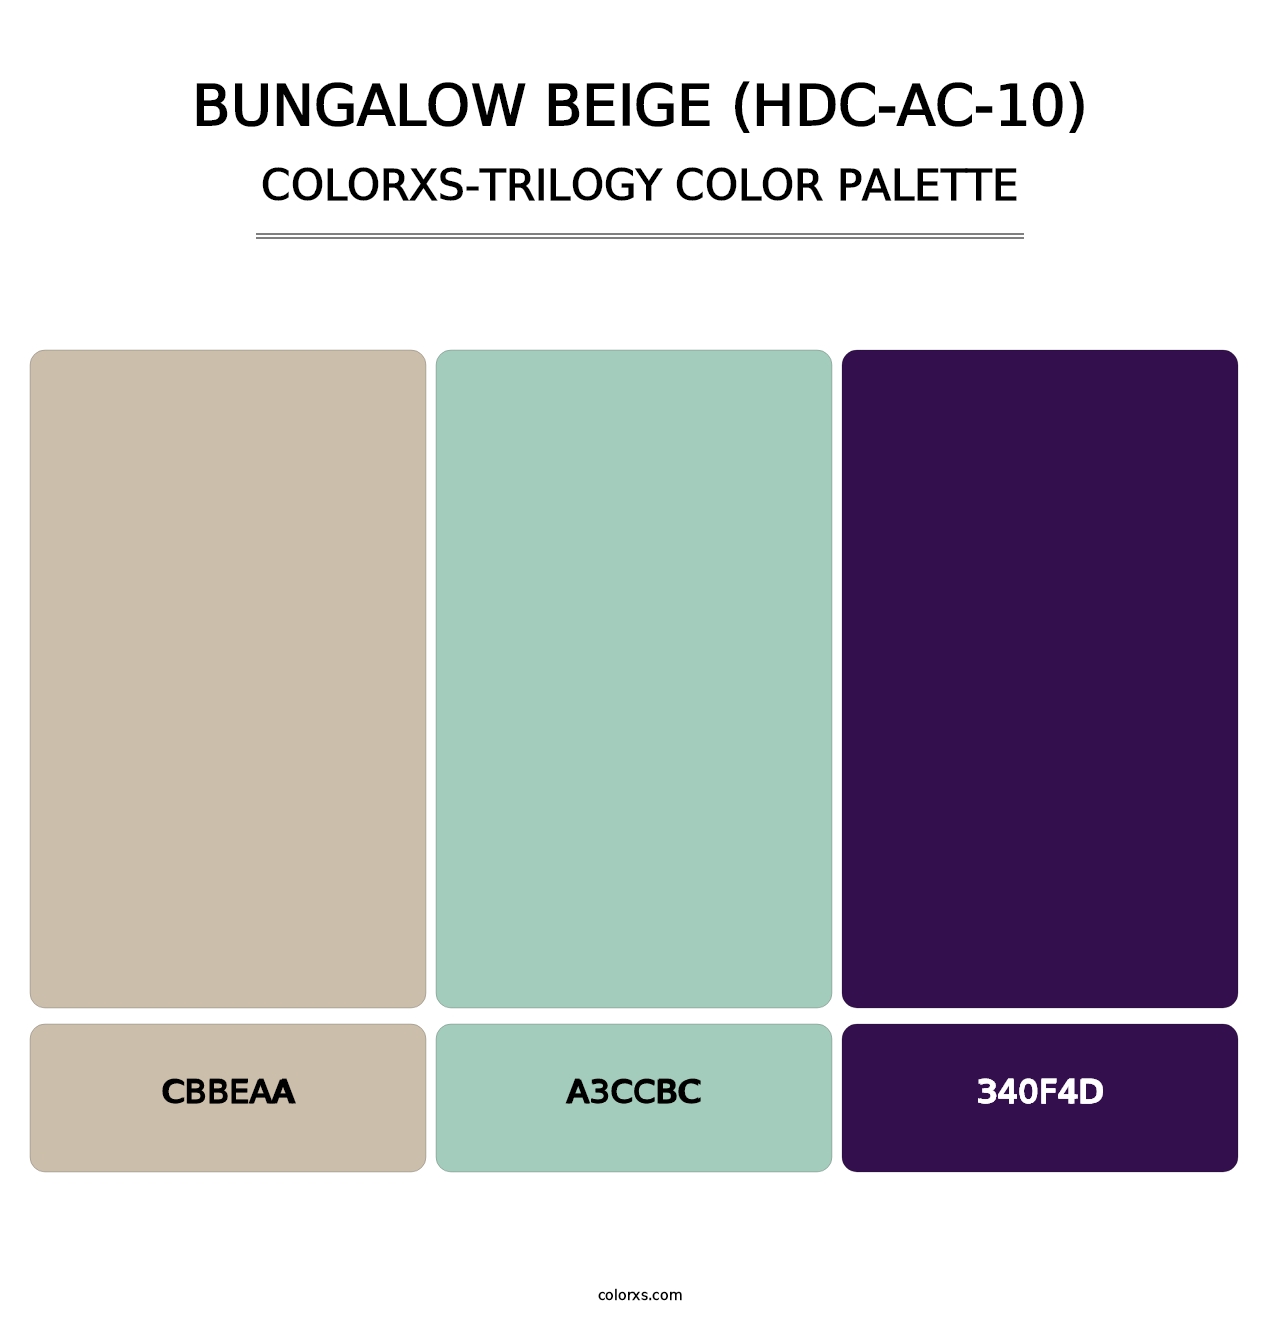 Bungalow Beige (HDC-AC-10) - Colorxs Trilogy Palette